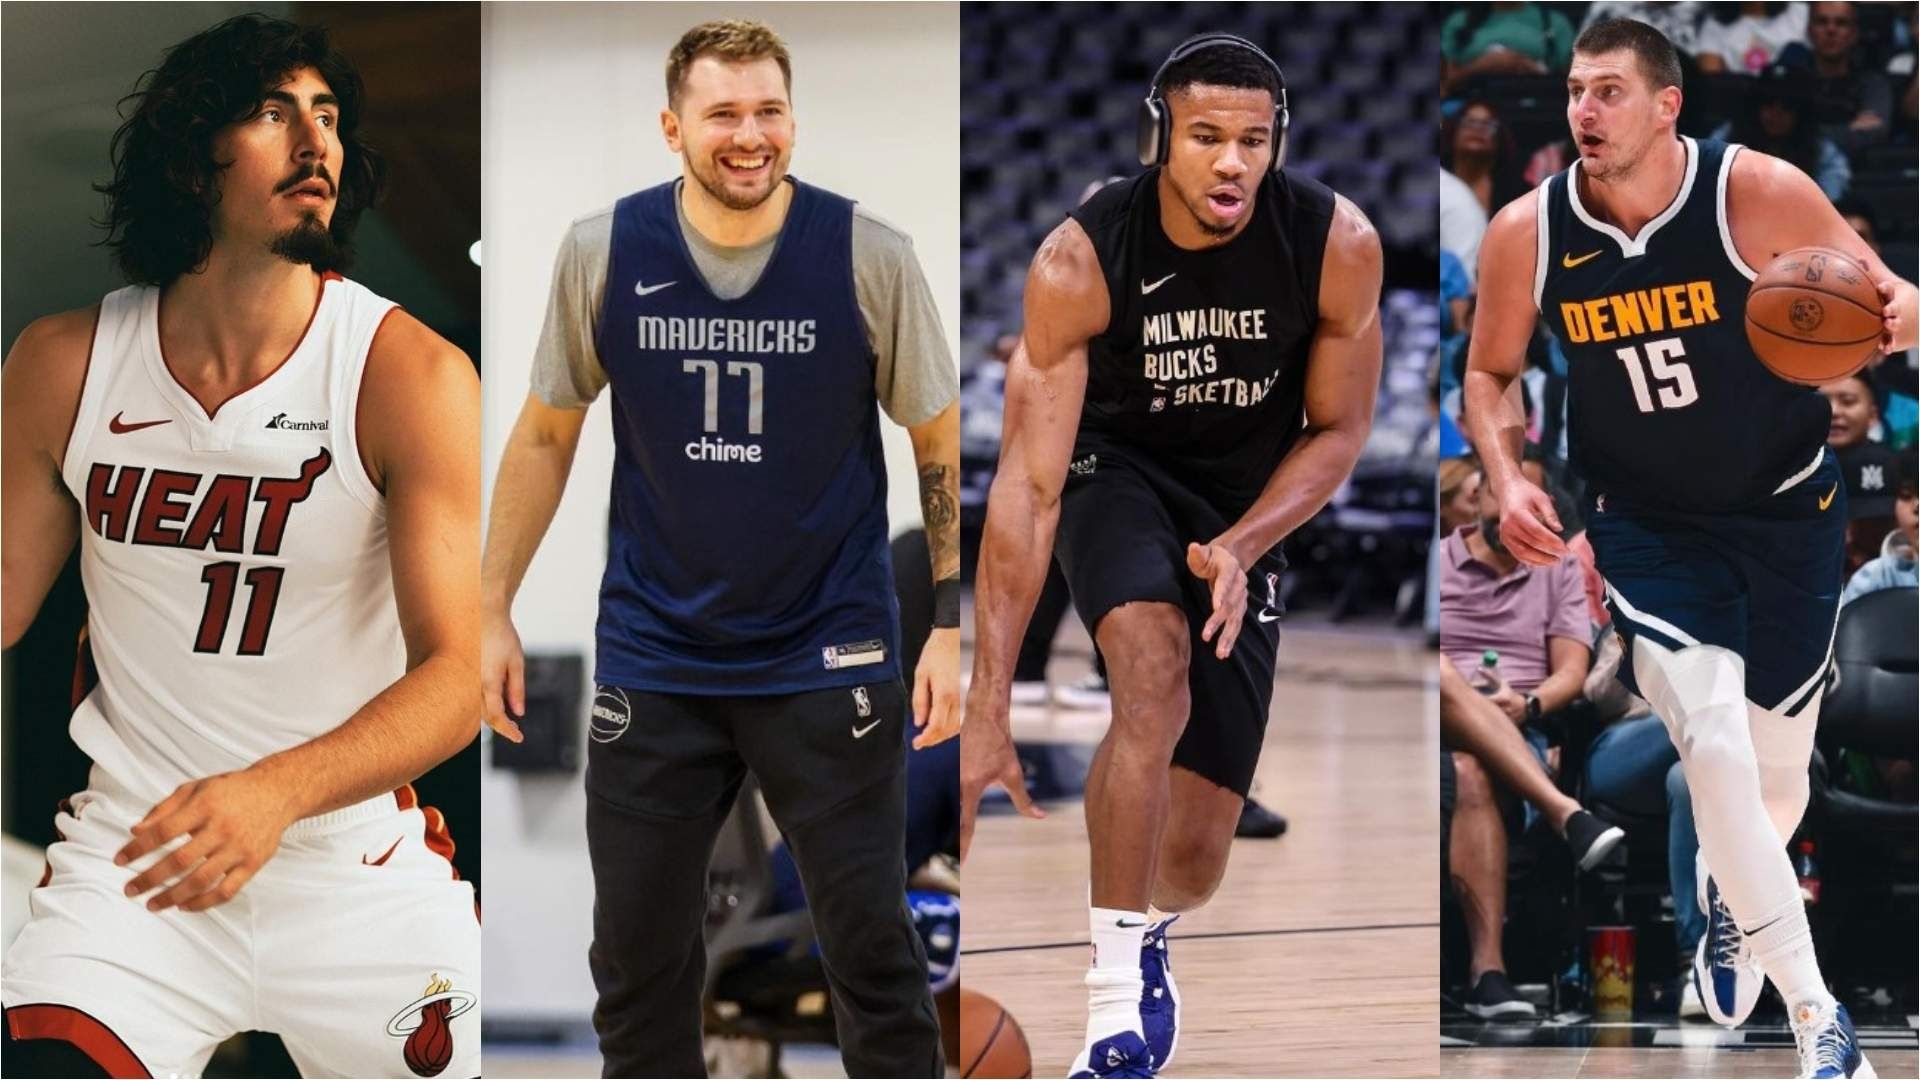 La NBA cada vez se expande más. Fotos: Instagram